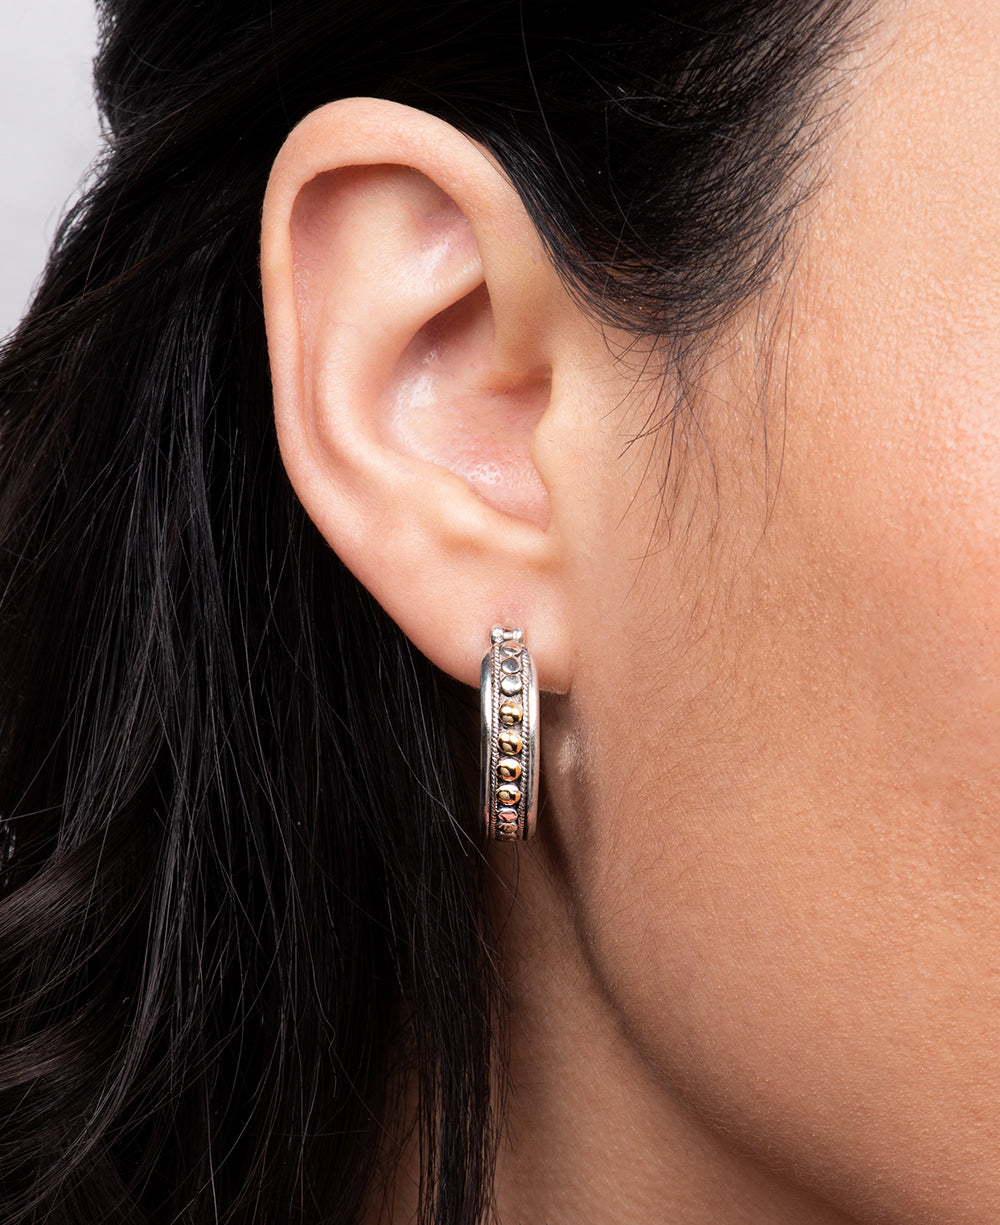 Elegant silver earrings for daily wear